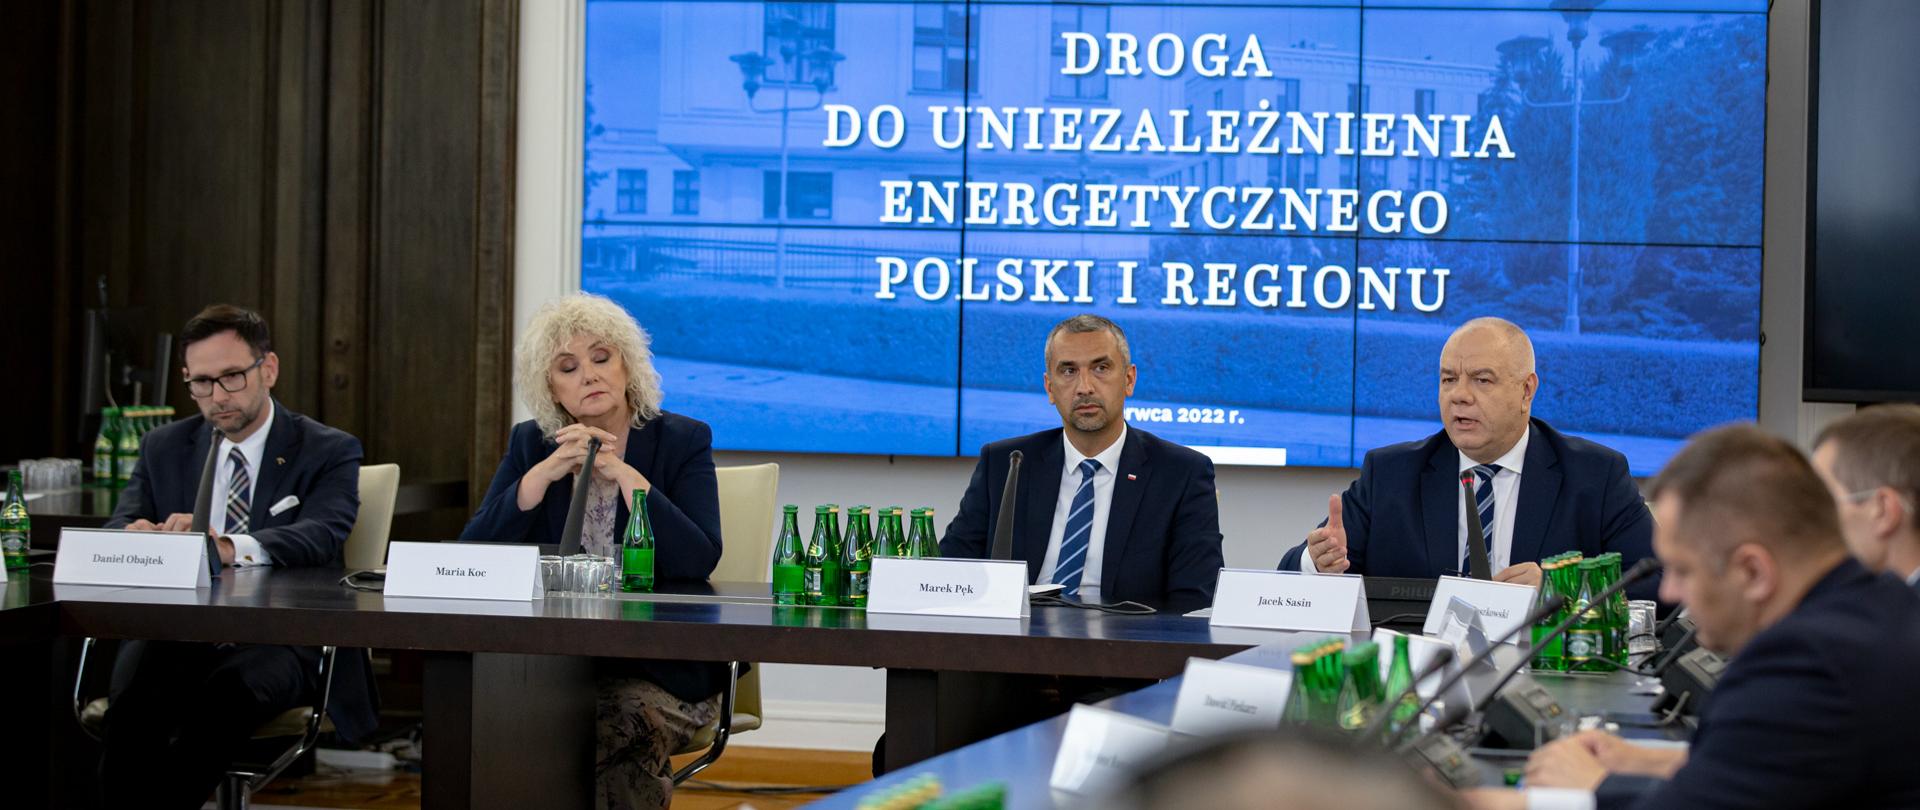 Wicepremier wraz z innymi uczestnikami konferencji siedzą za stołem. W tle ekran z napisem droga do uniezależnienia energetycznego Polski i regionu.
